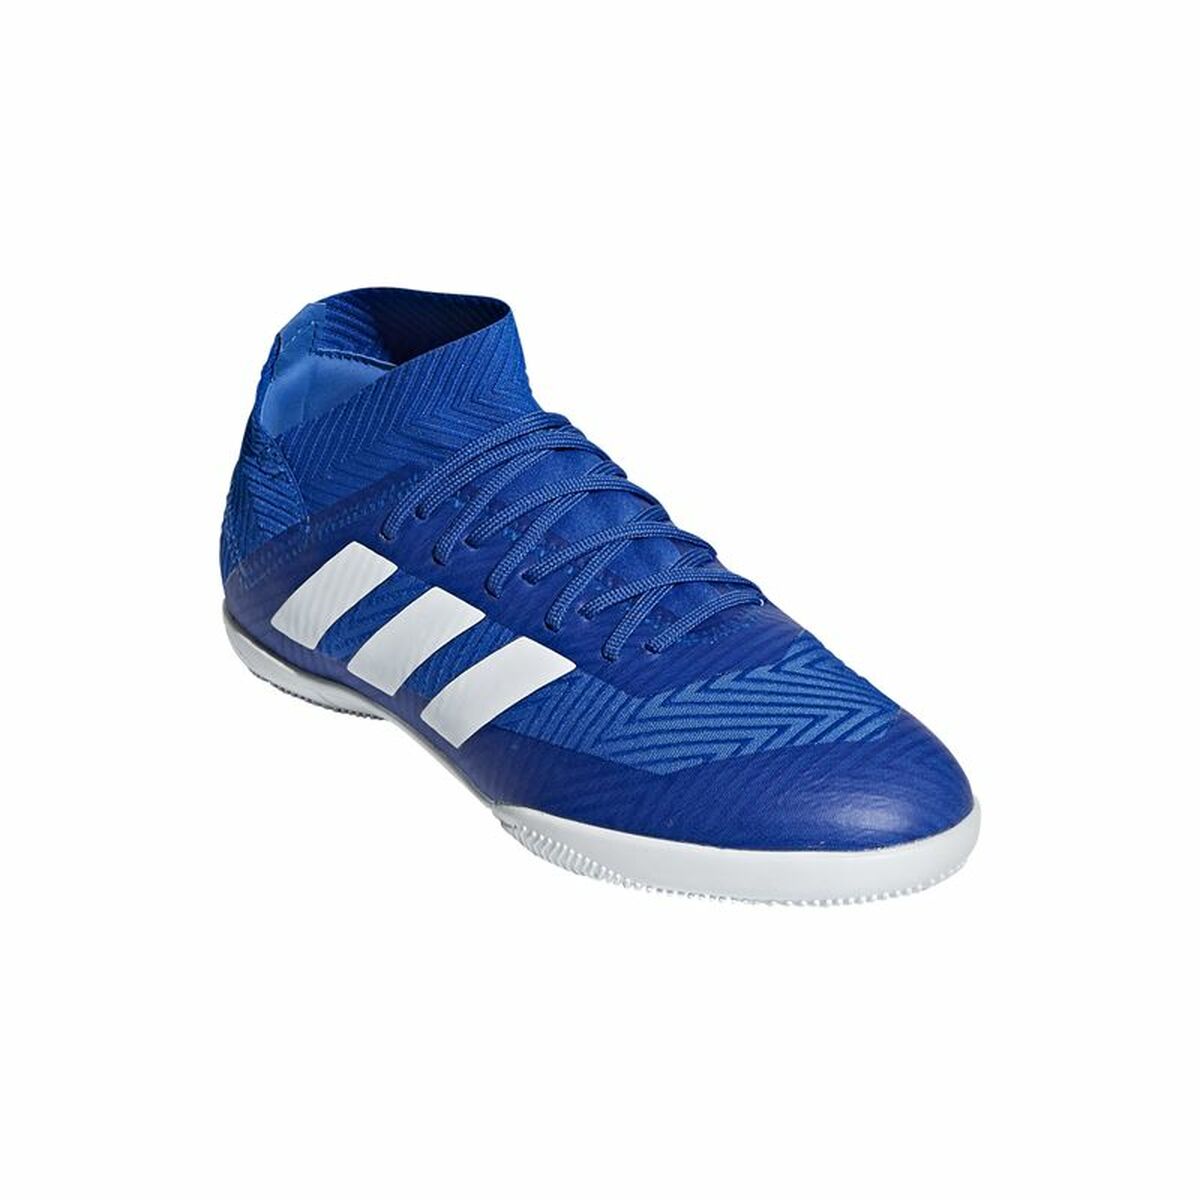 Children's Indoor Football Shoes Adidas Nemeziz Tango 18.3 Indoor